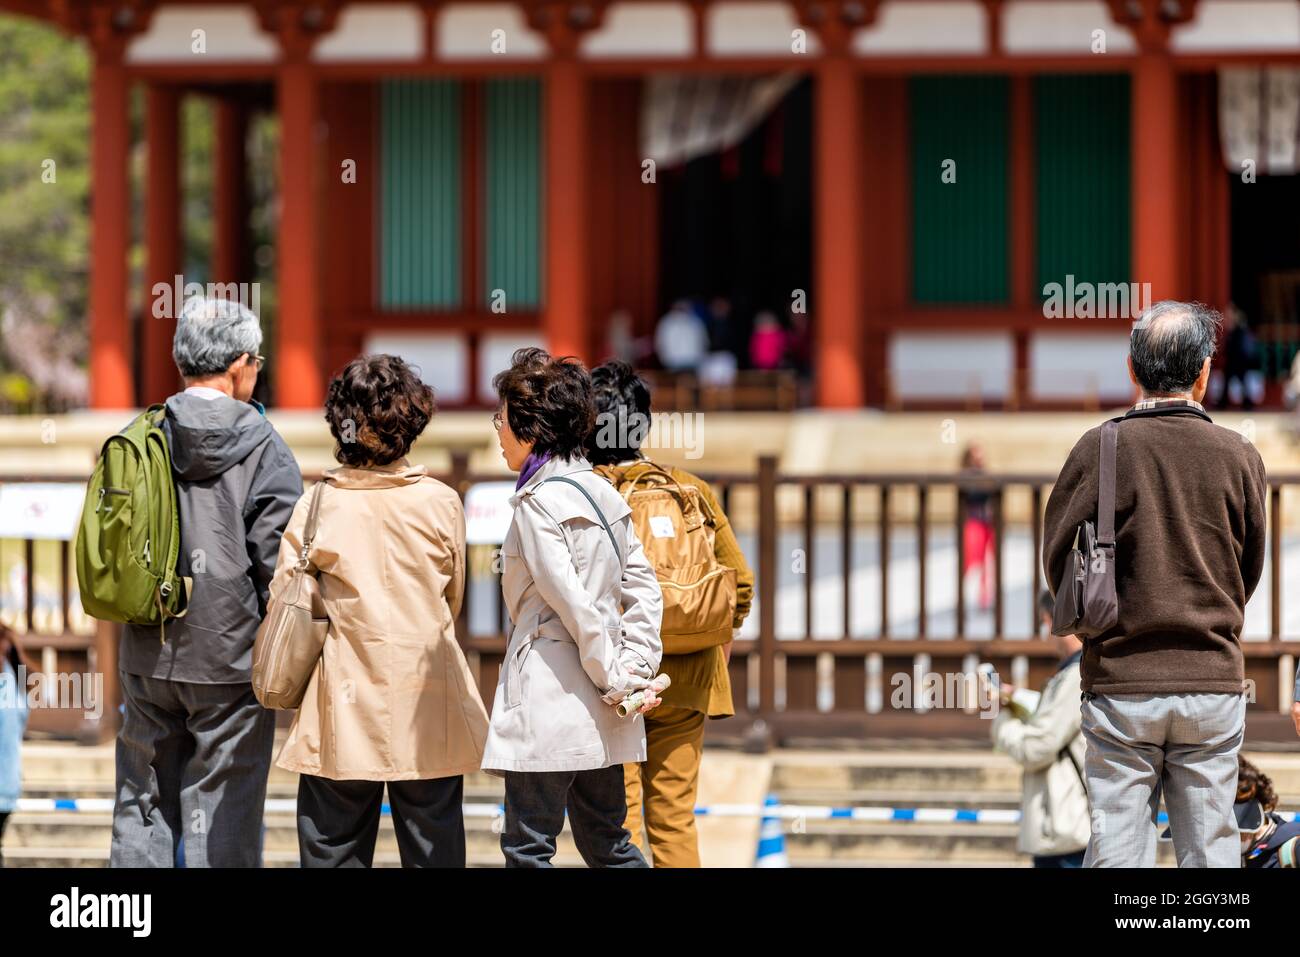 Nara, Giappone - 14 aprile 2019: Gruppo di turisti che guardano il famoso tempio Kofuku-ji Chu-Kondo Central Golden Hall in città Foto Stock